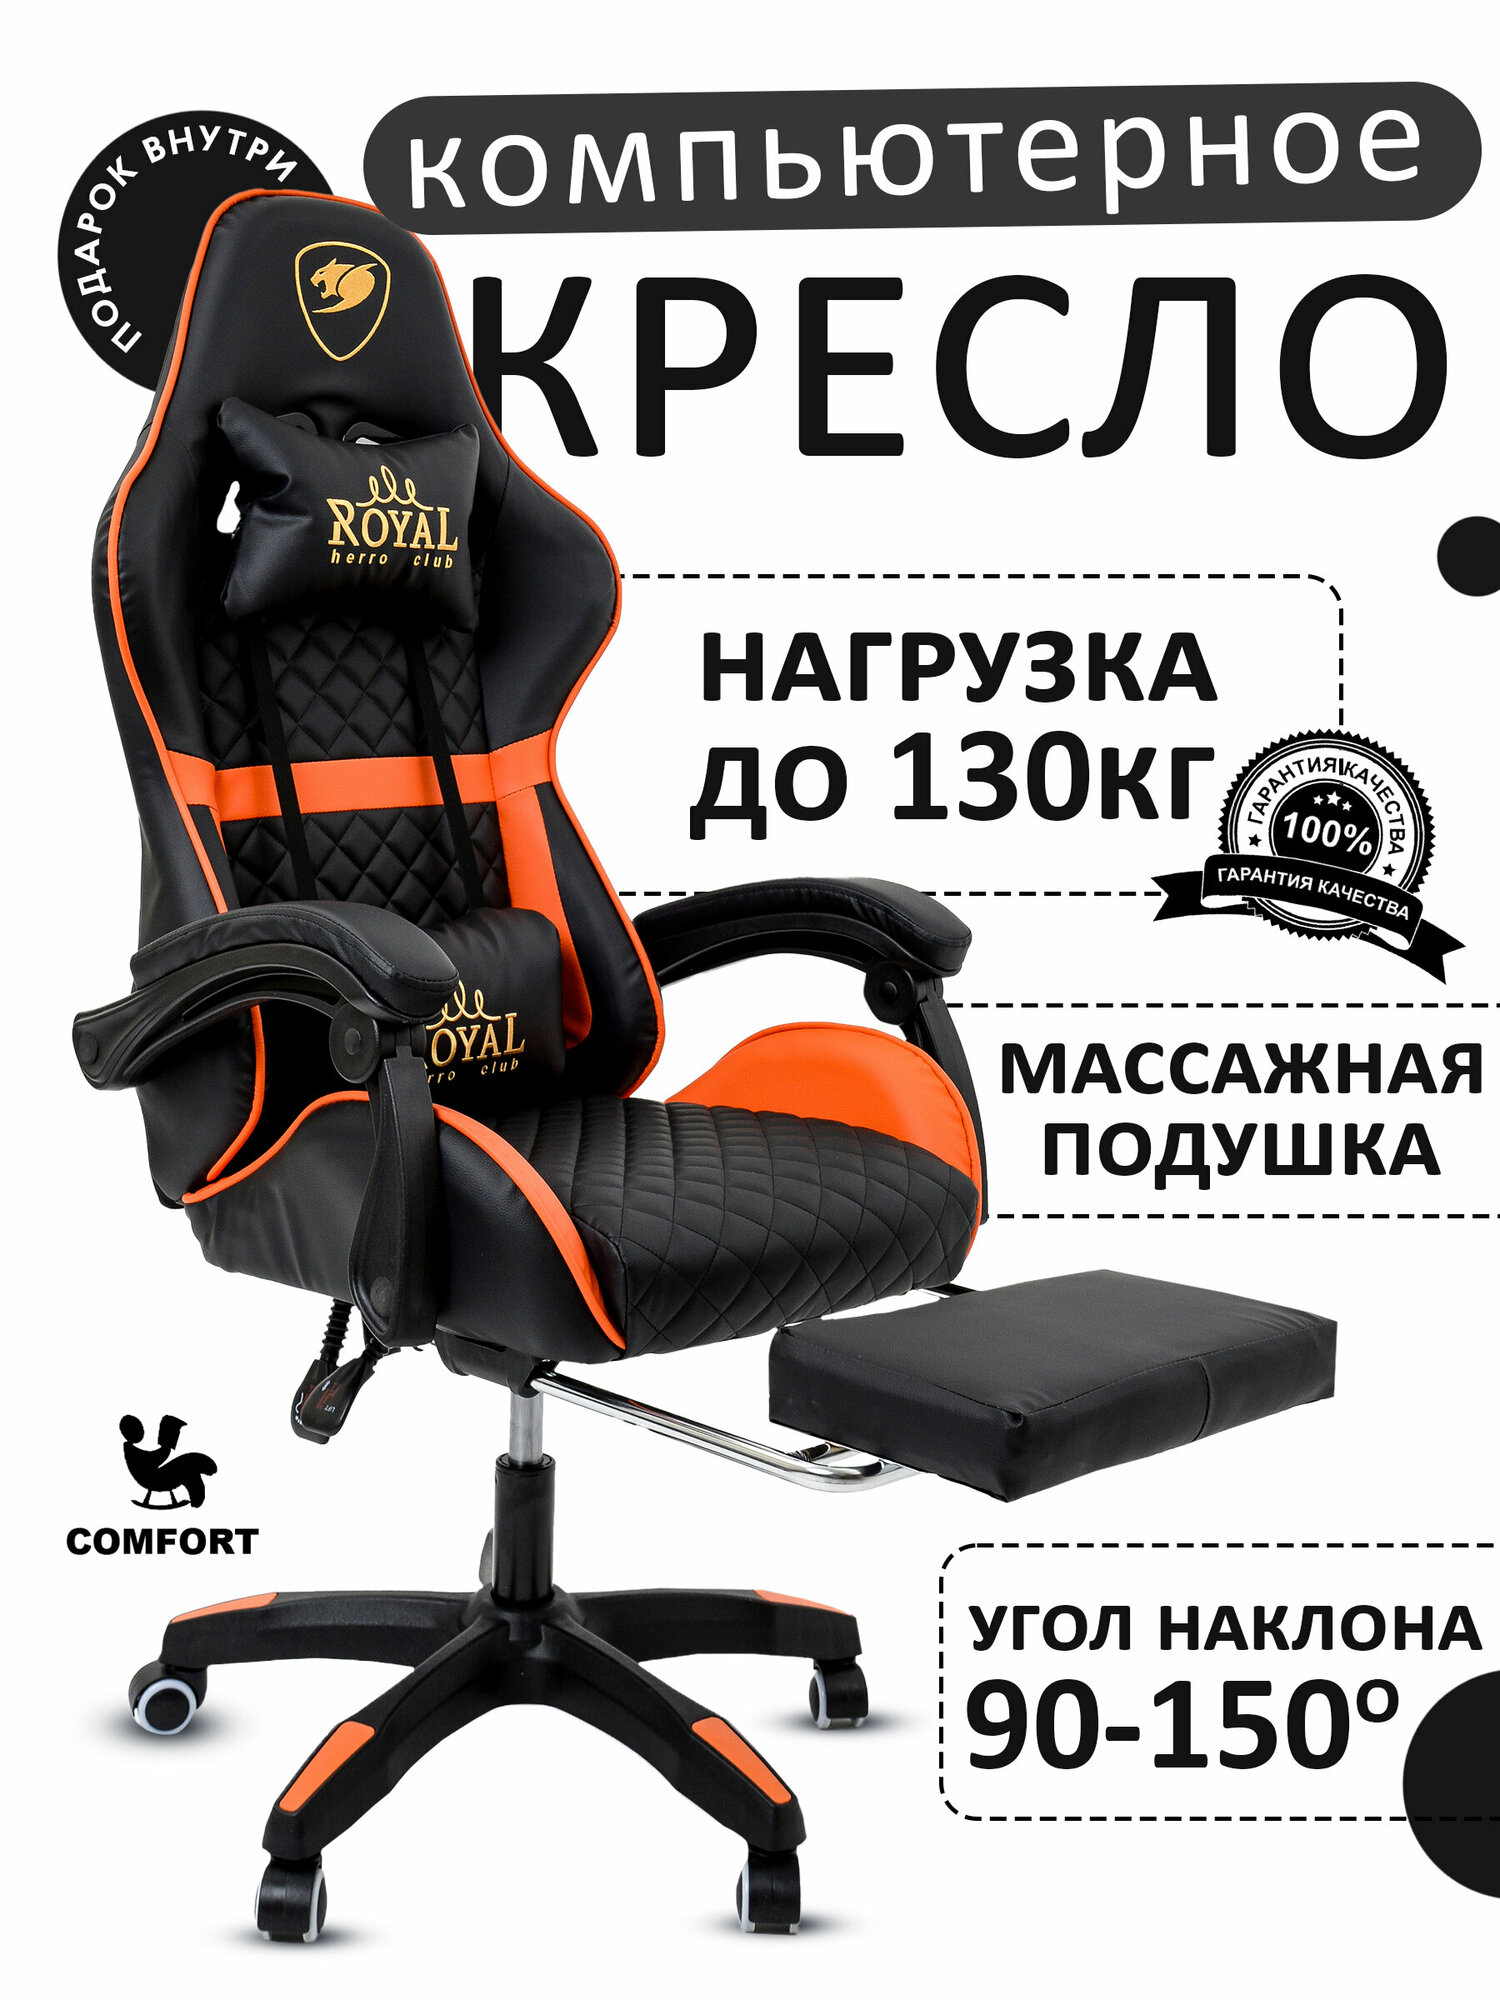 Компьютерное игровое кресло с массажем цвет: чёрно-оранжевый